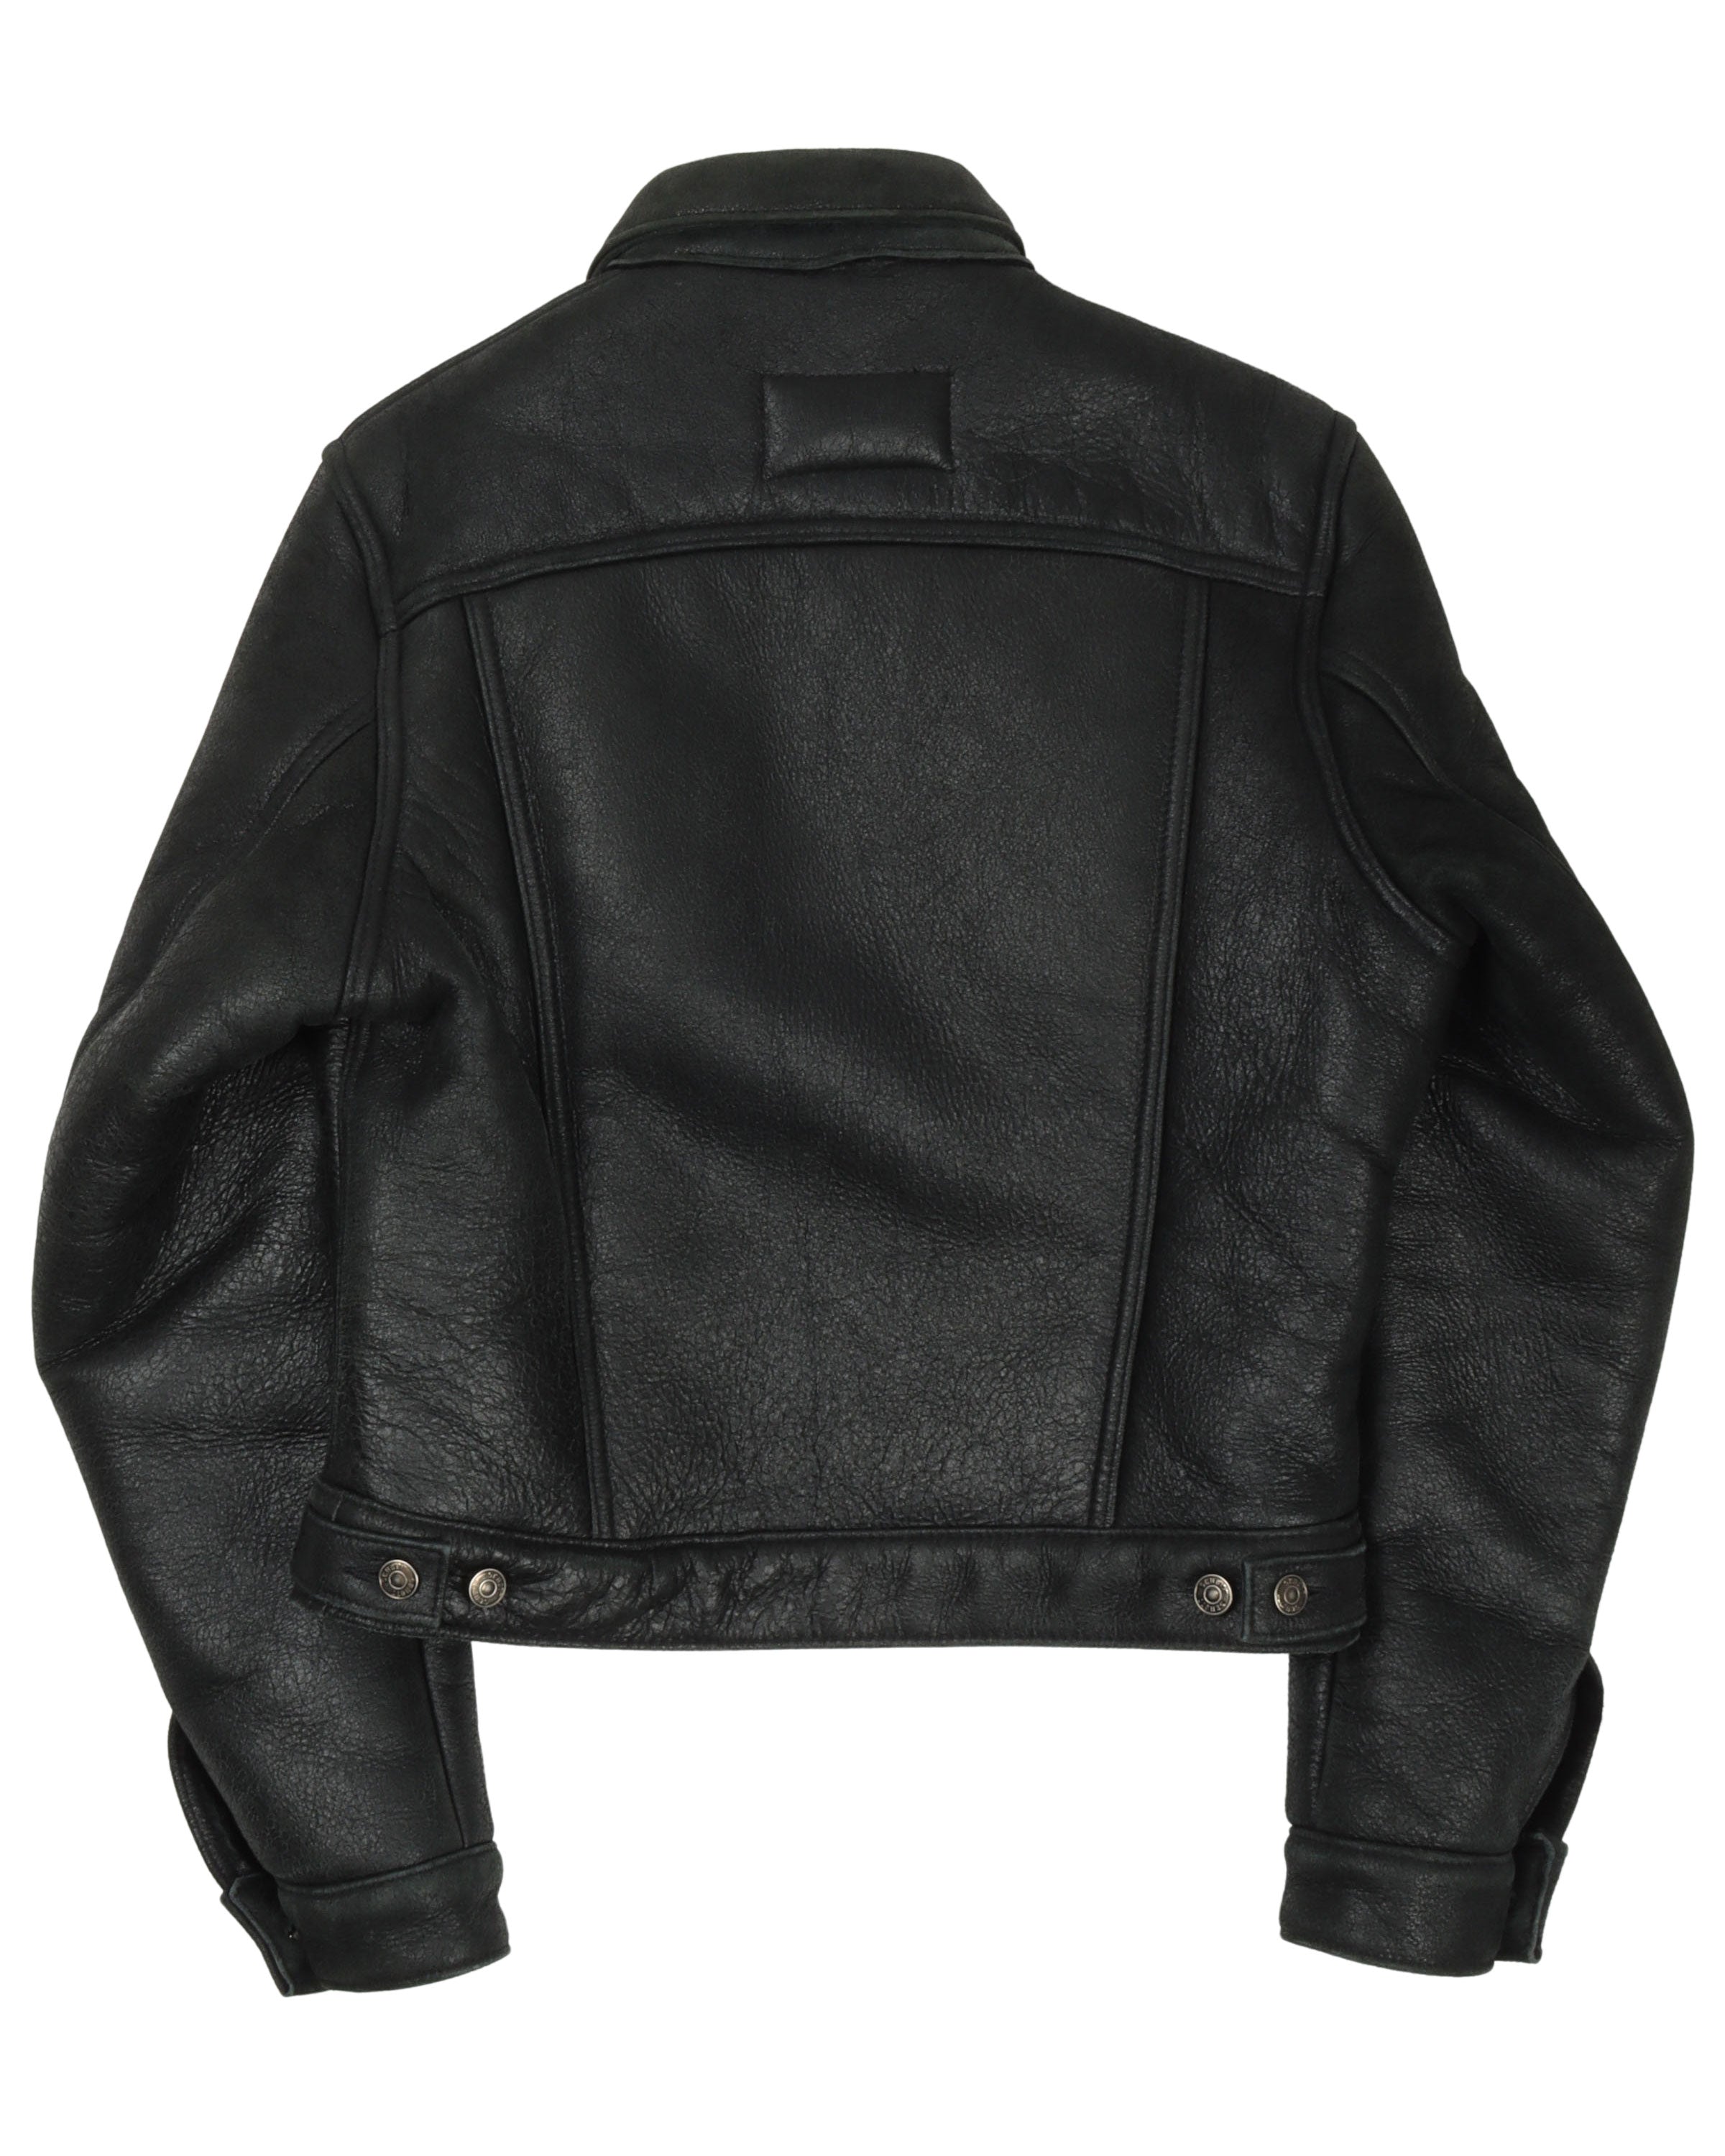 SS17 Schott Shearling Leather Trucker Jacket